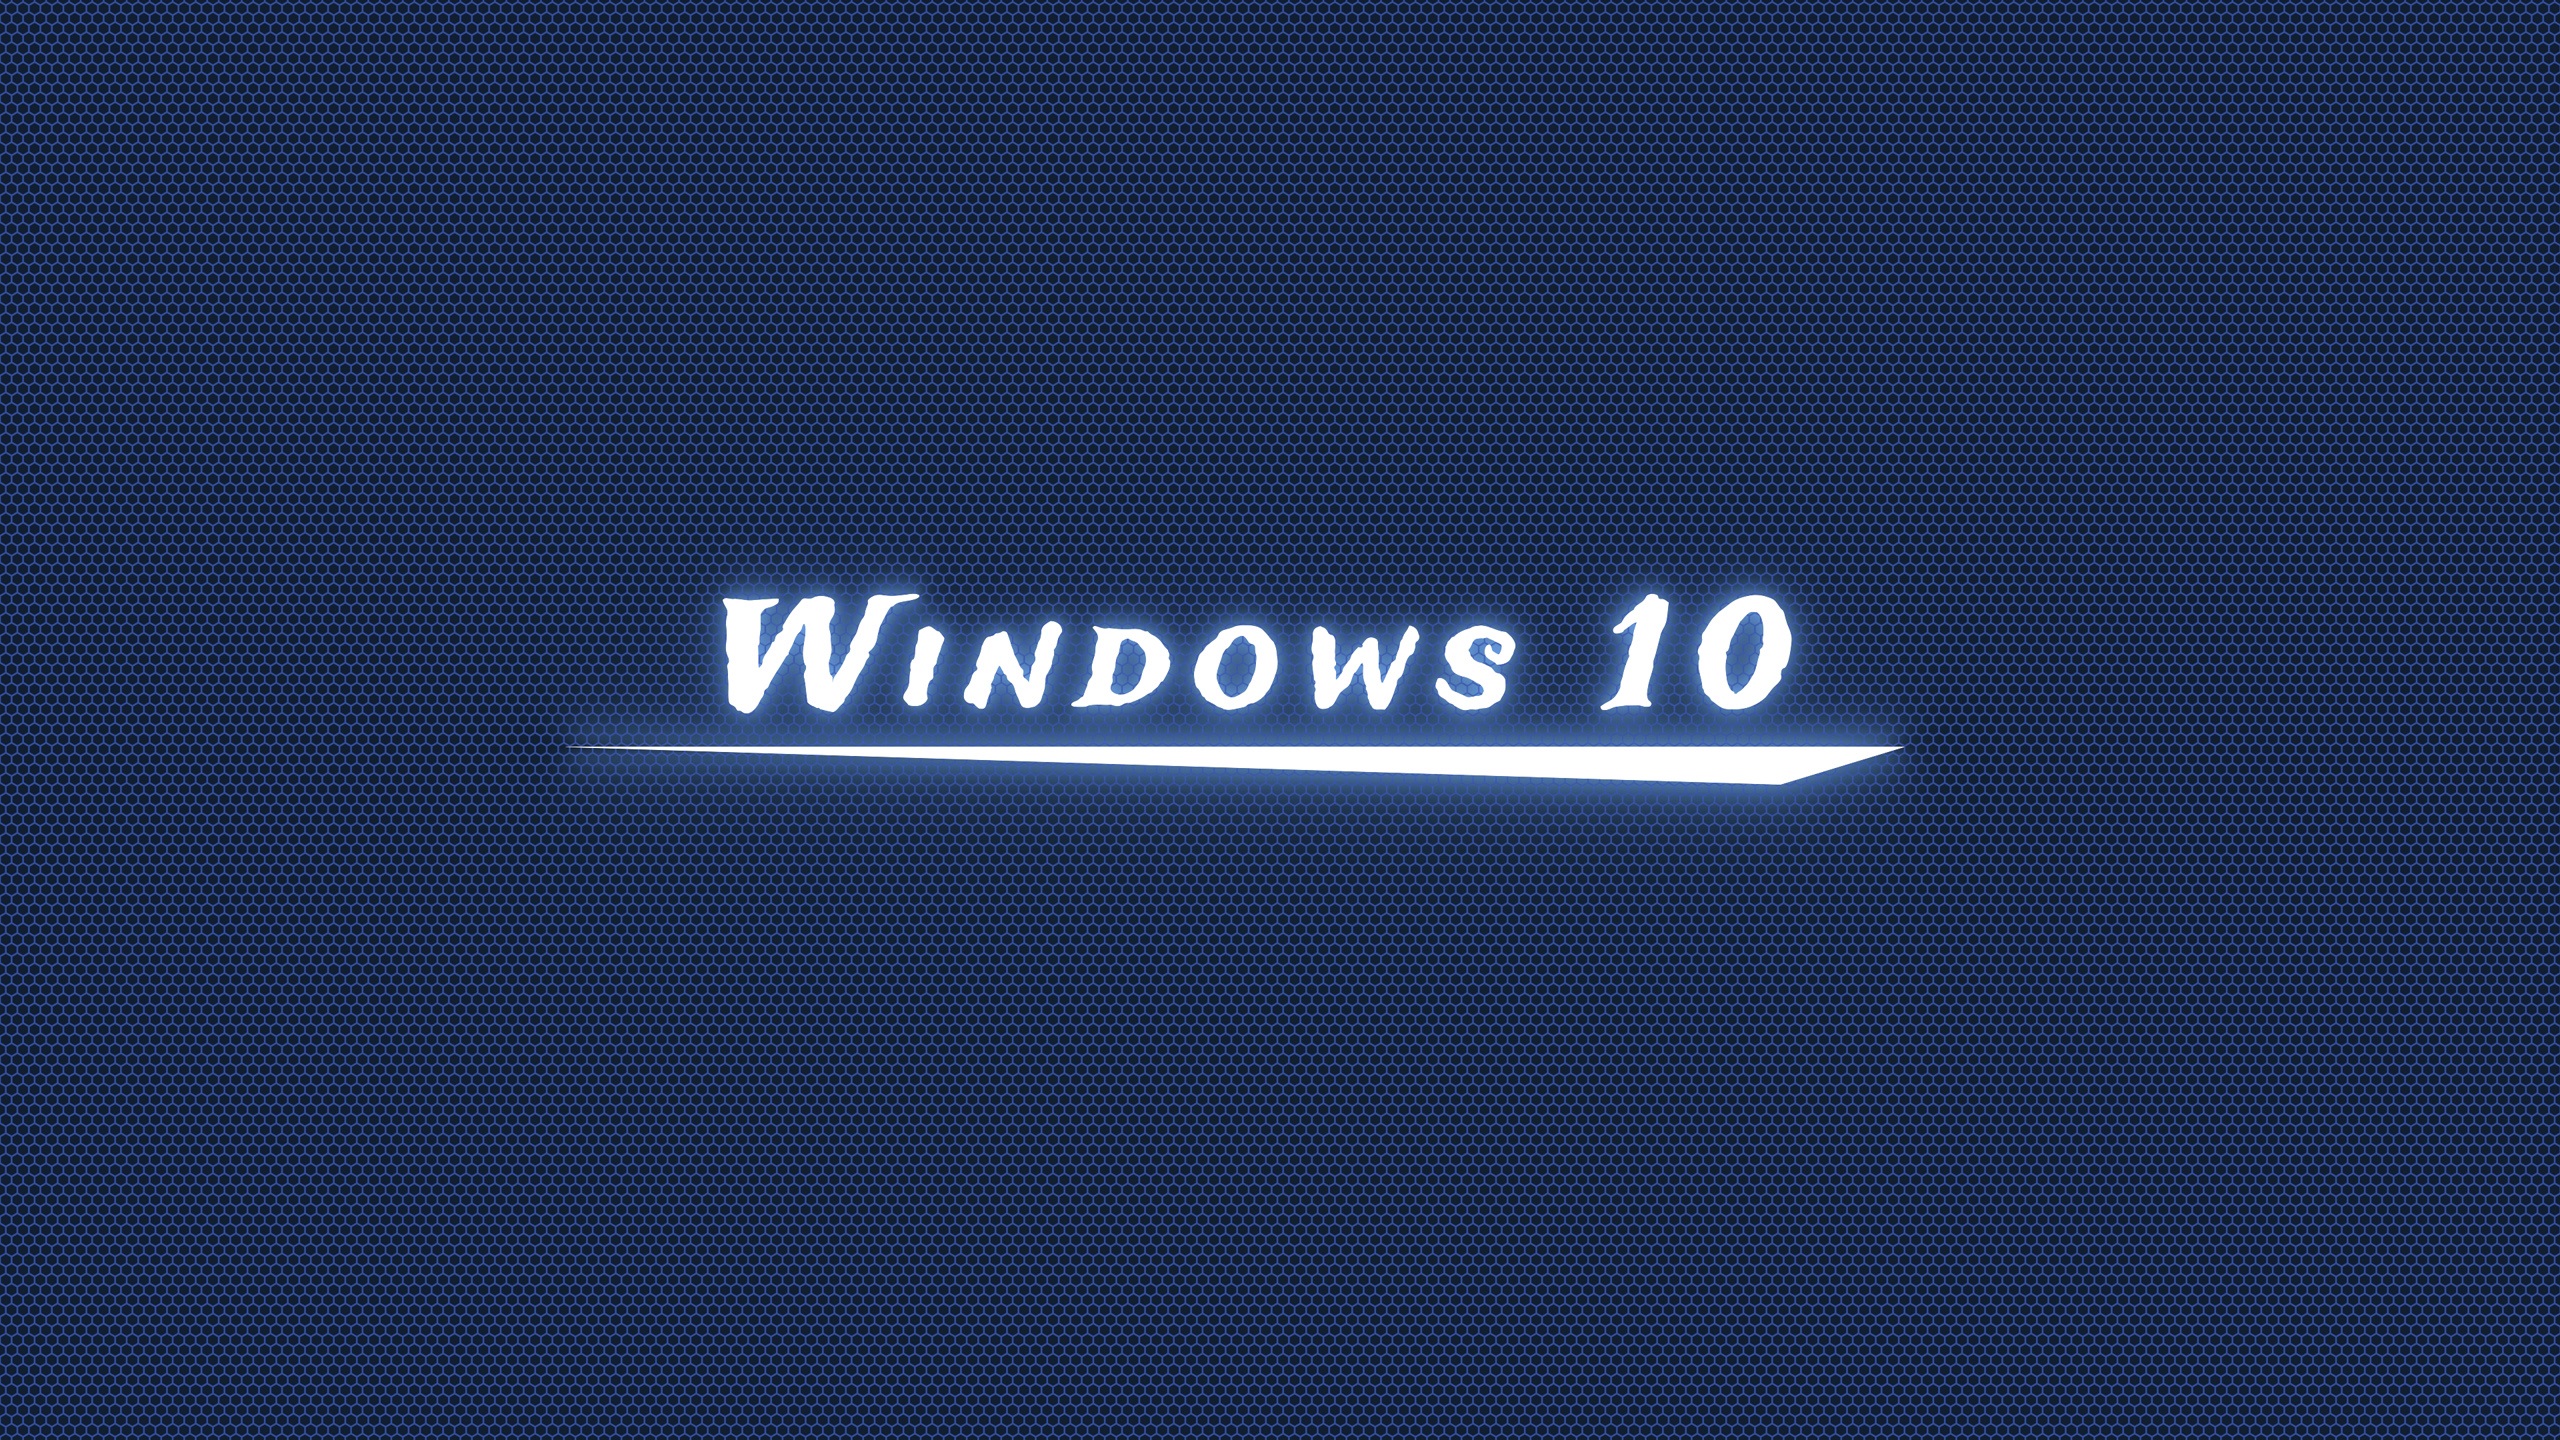 Windows-10_2560x1440.jpg